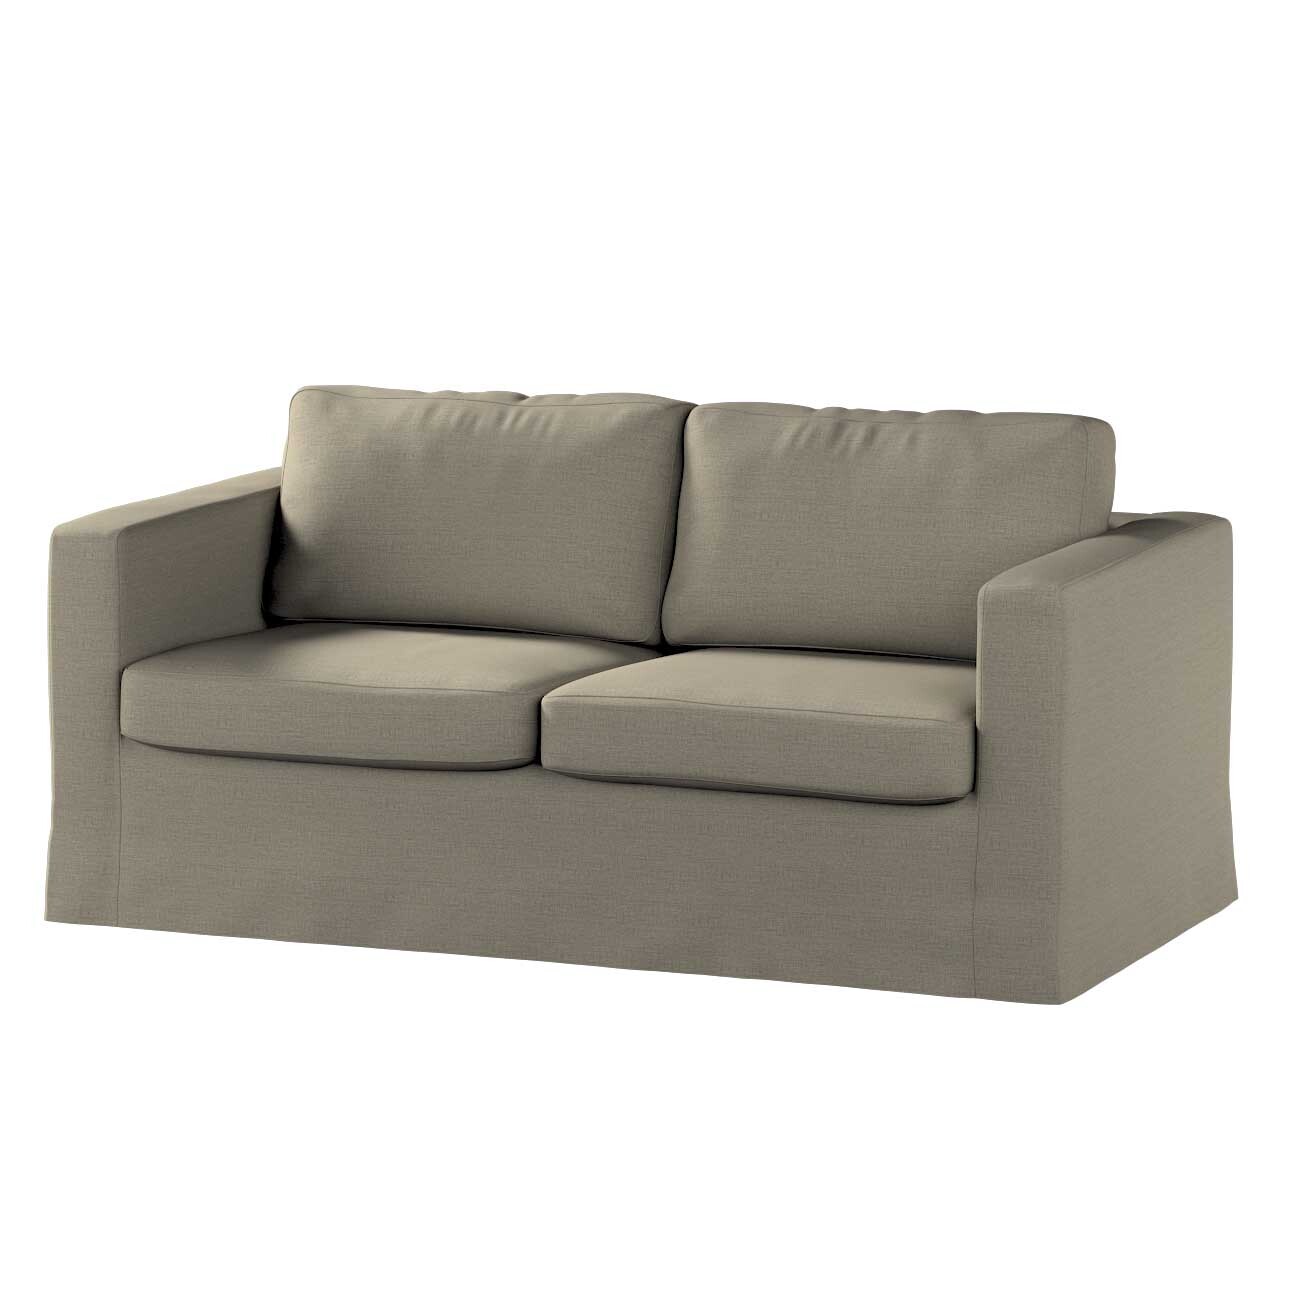 Bezug für Karlstad 2-Sitzer Sofa nicht ausklappbar, lang, grau-braun, Sofah günstig online kaufen